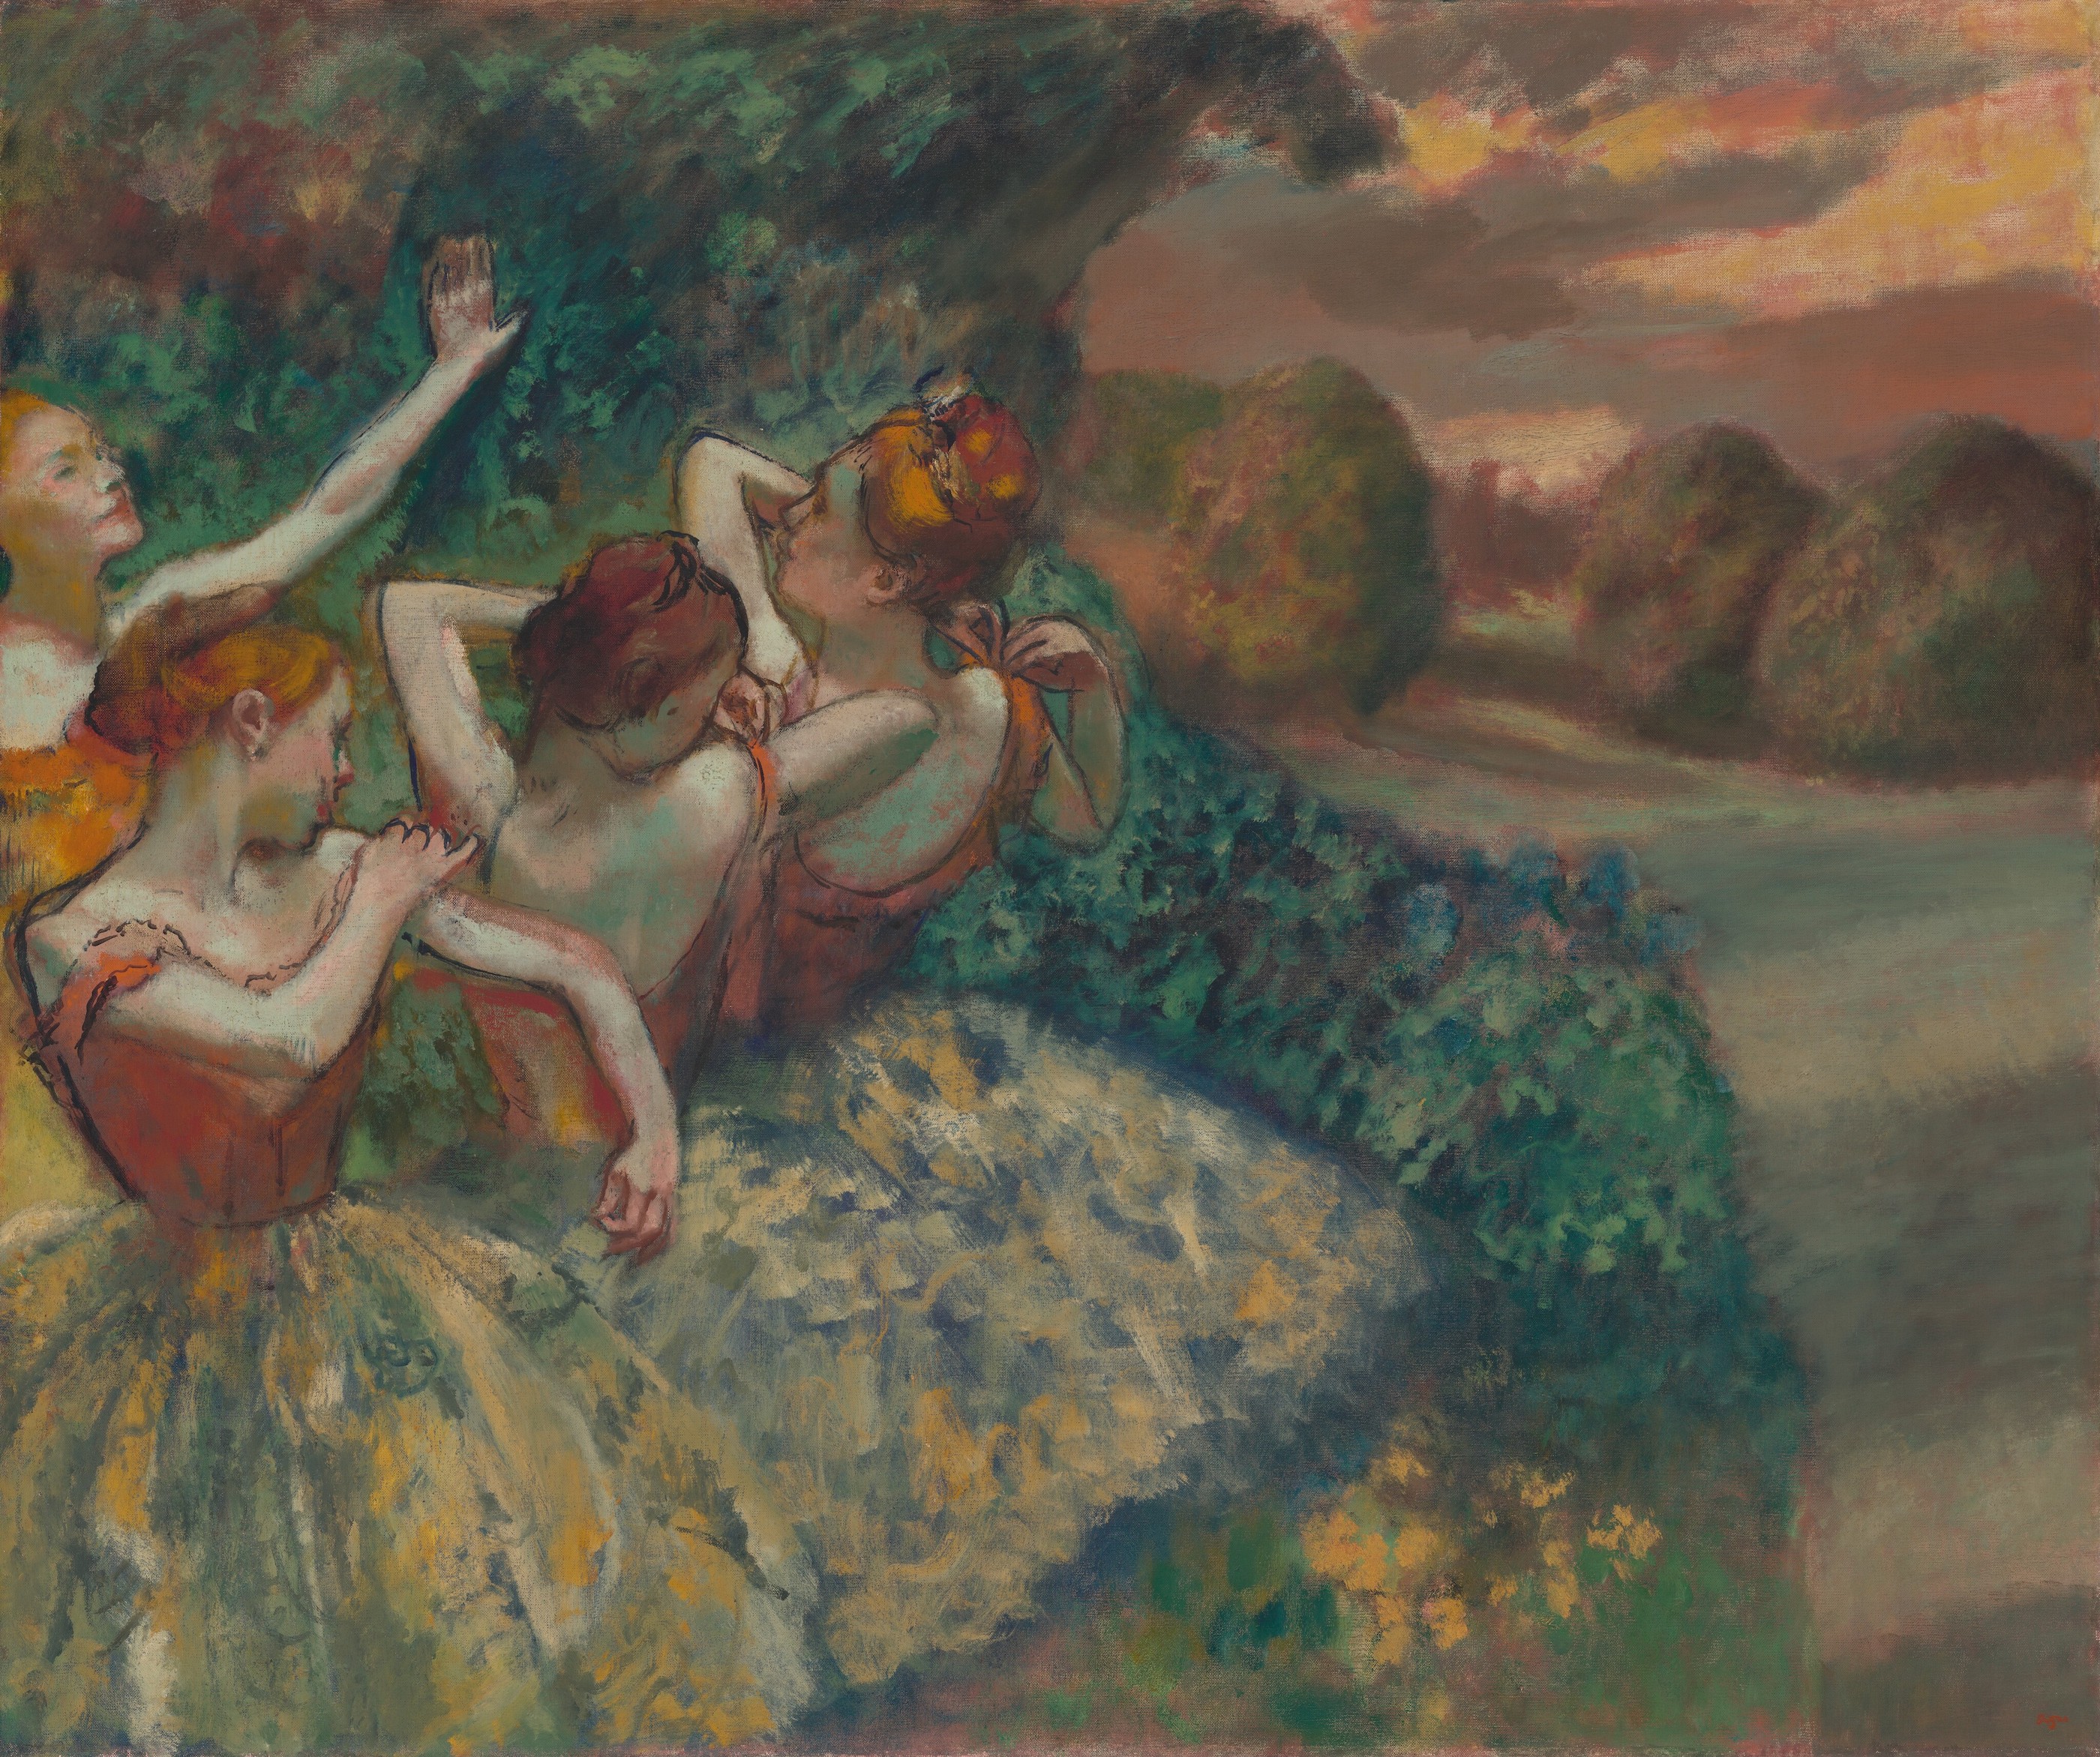 Dört Dansçı (orig. "Four Dancers") by Edgar Degas - 1899 - 151.1 x 180.2 cm 